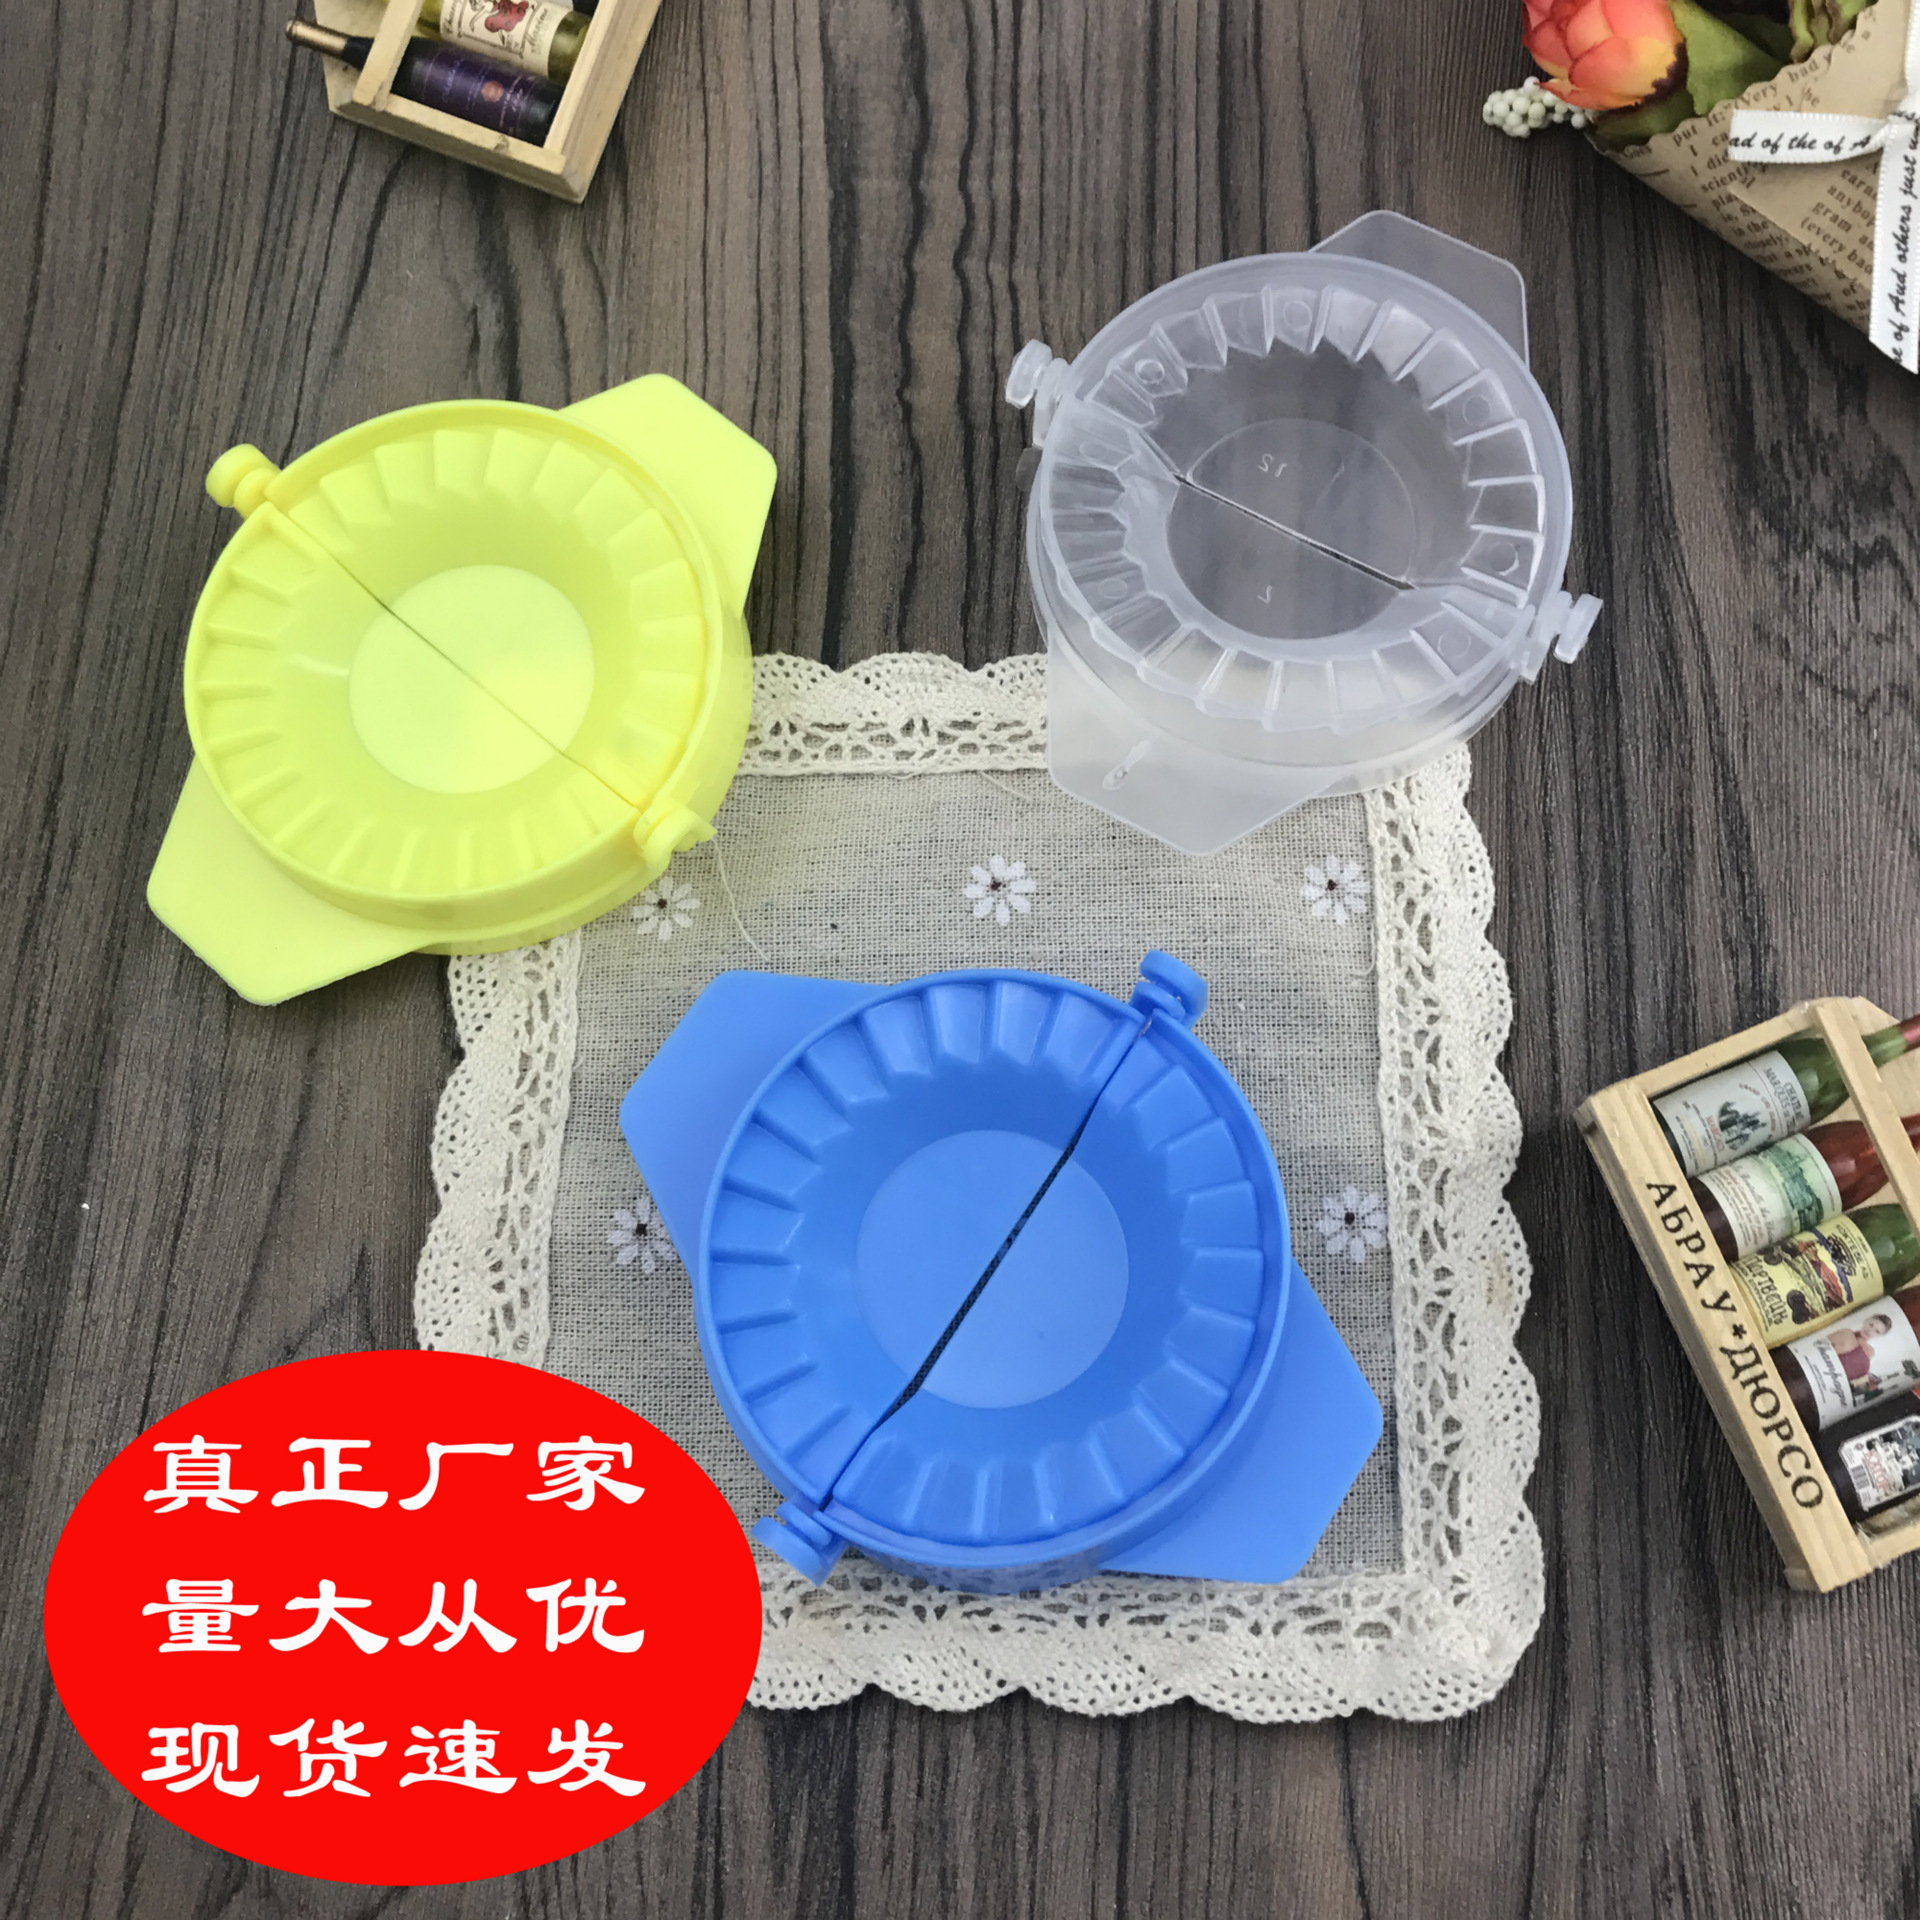 厨房创意手动包饺子器 塑料彩色饺子夹家用包饺子模具 饺子器 T|ru